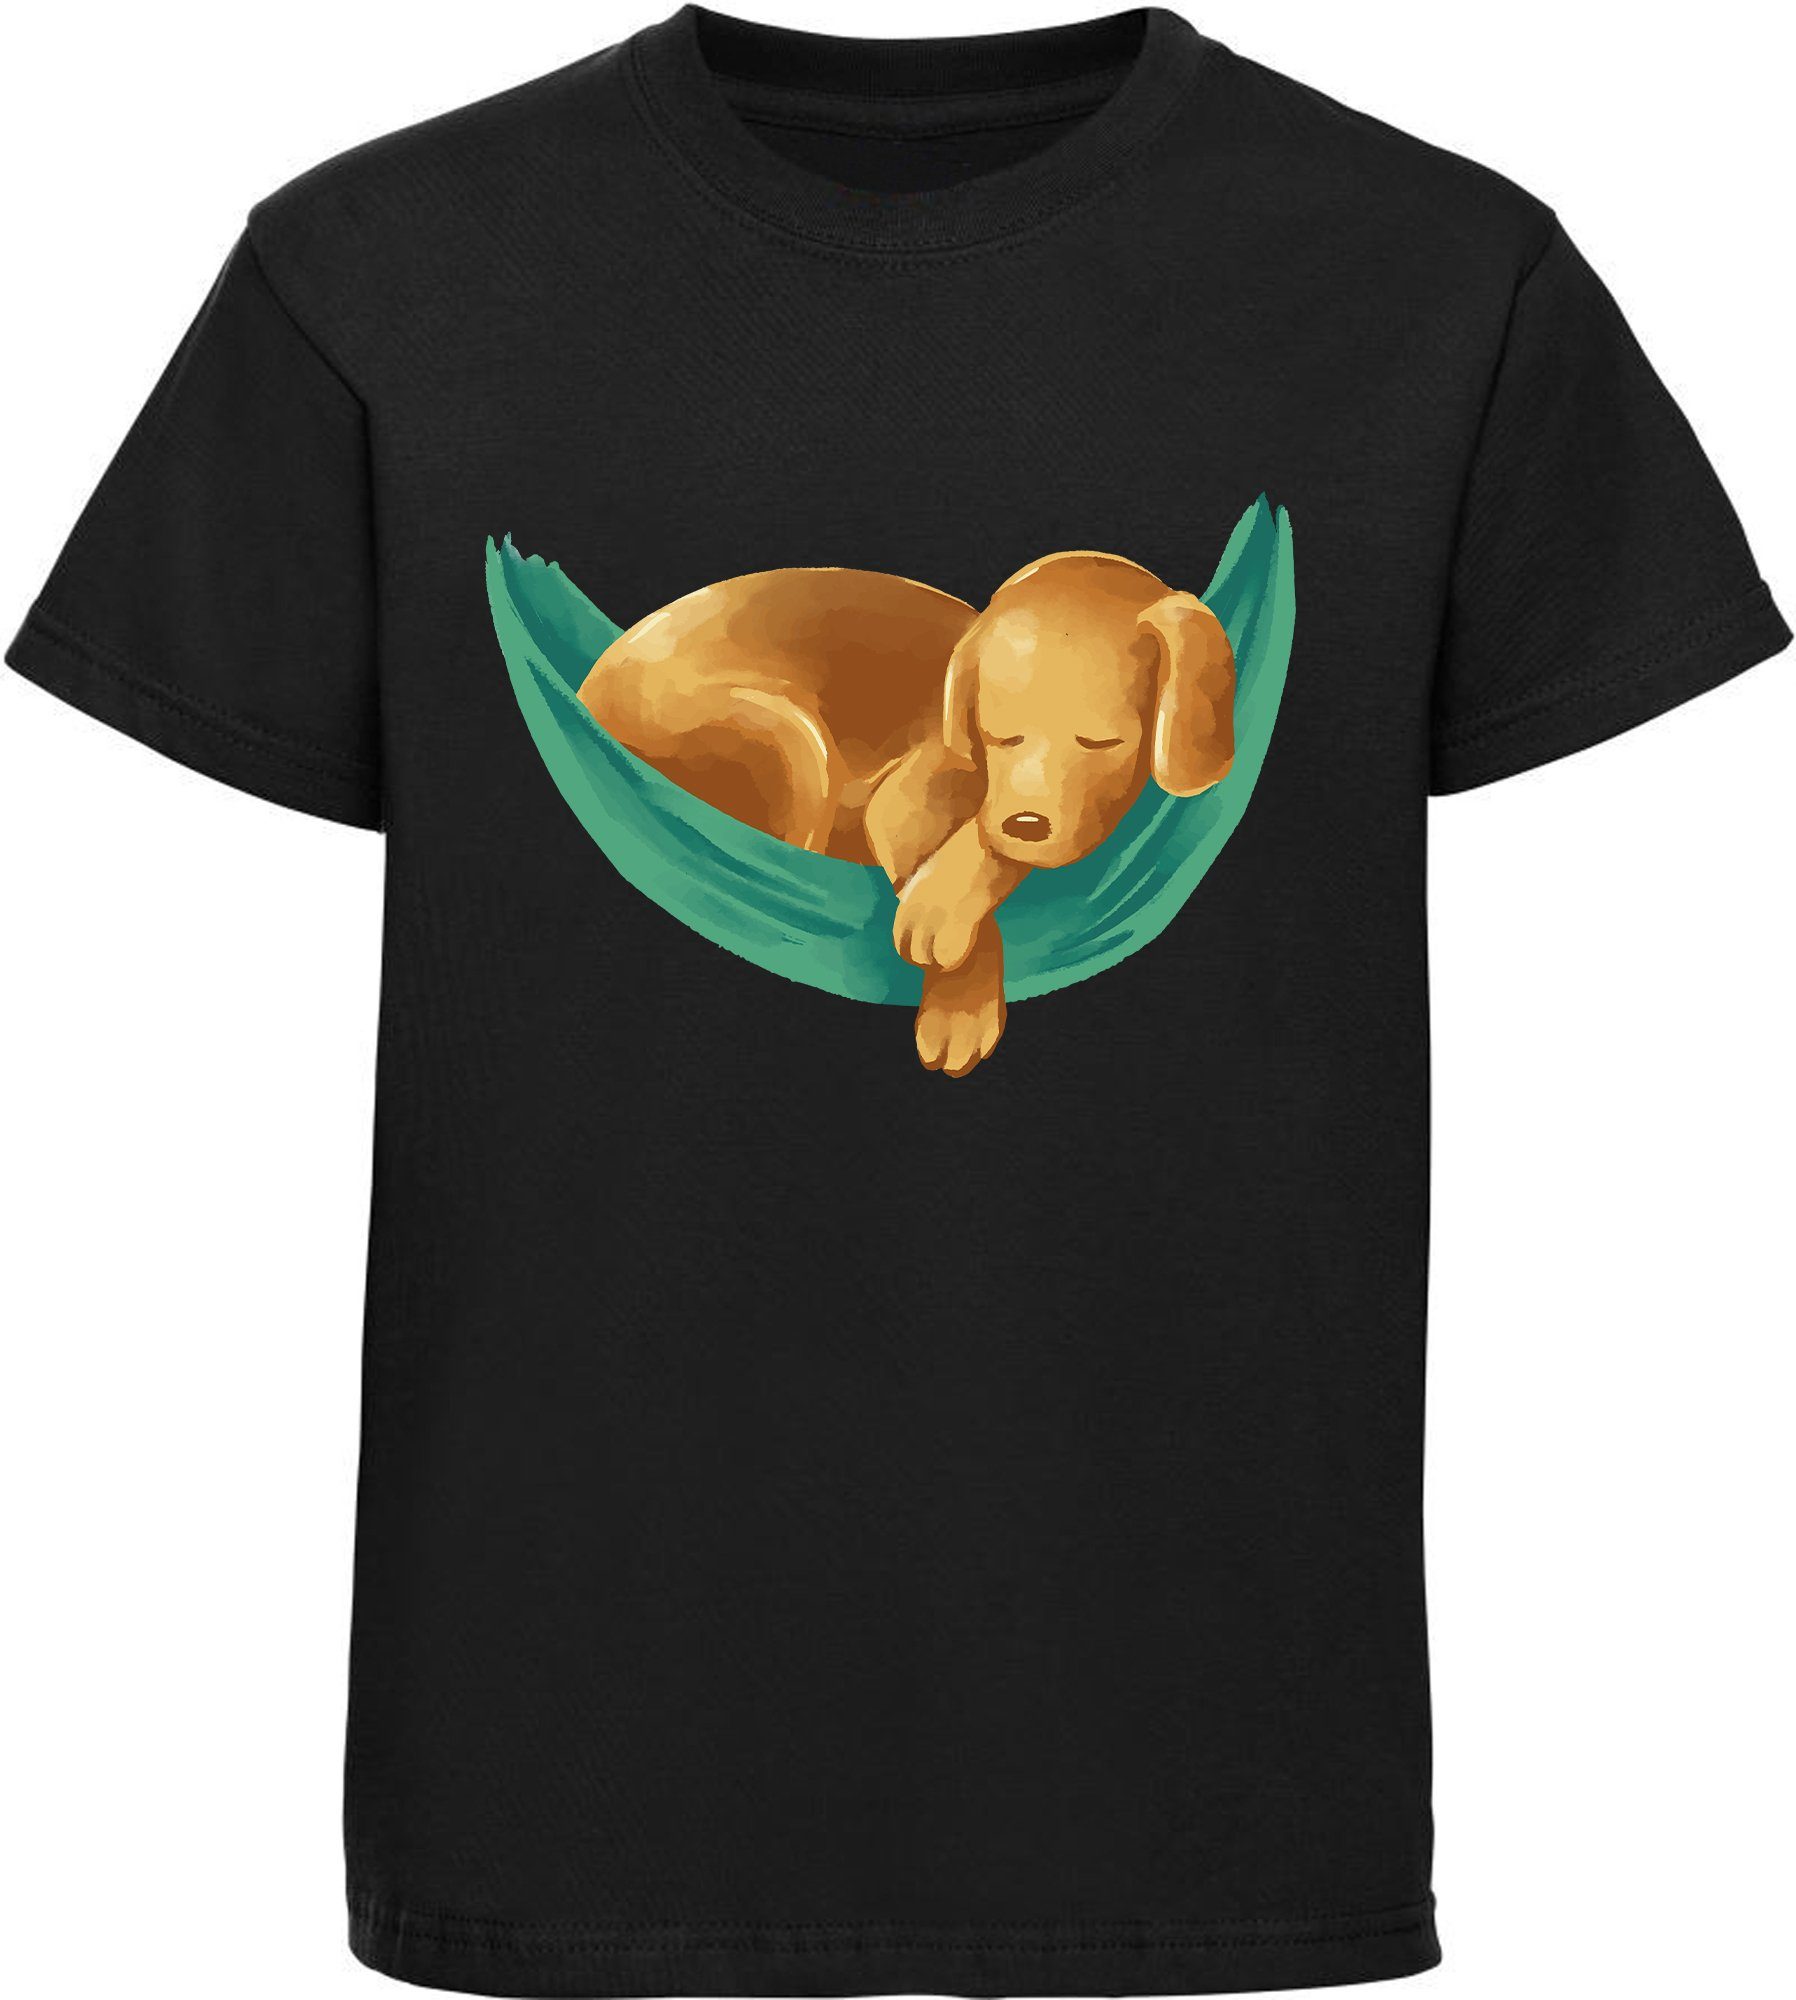 MyDesign24 T-Shirt Kinder Hunde Print Shirt bedruckt - Labrador Welpe in Hängematte Baumwollshirt mit Aufdruck, i245 schwarz | T-Shirts